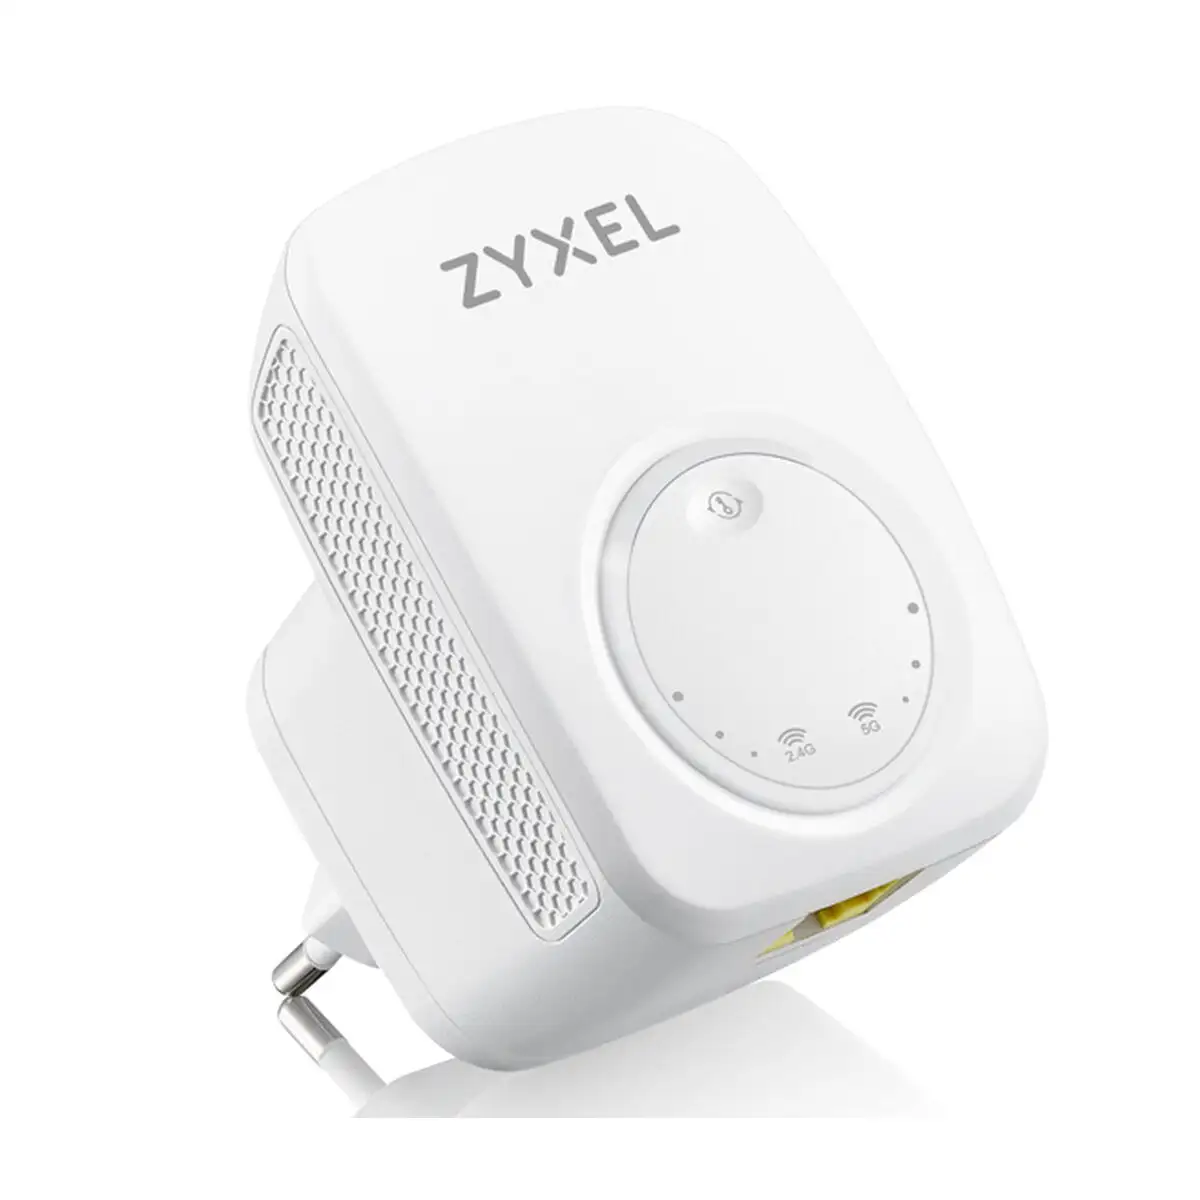 Amplificateur wifi zyxel wre6505v2 eu0101f_4841. DIAYTAR SENEGAL - Votre Plaisir Shopping à Portée de Clic. Explorez notre boutique en ligne et trouvez des produits qui ajoutent une touche de bonheur à votre vie quotidienne.